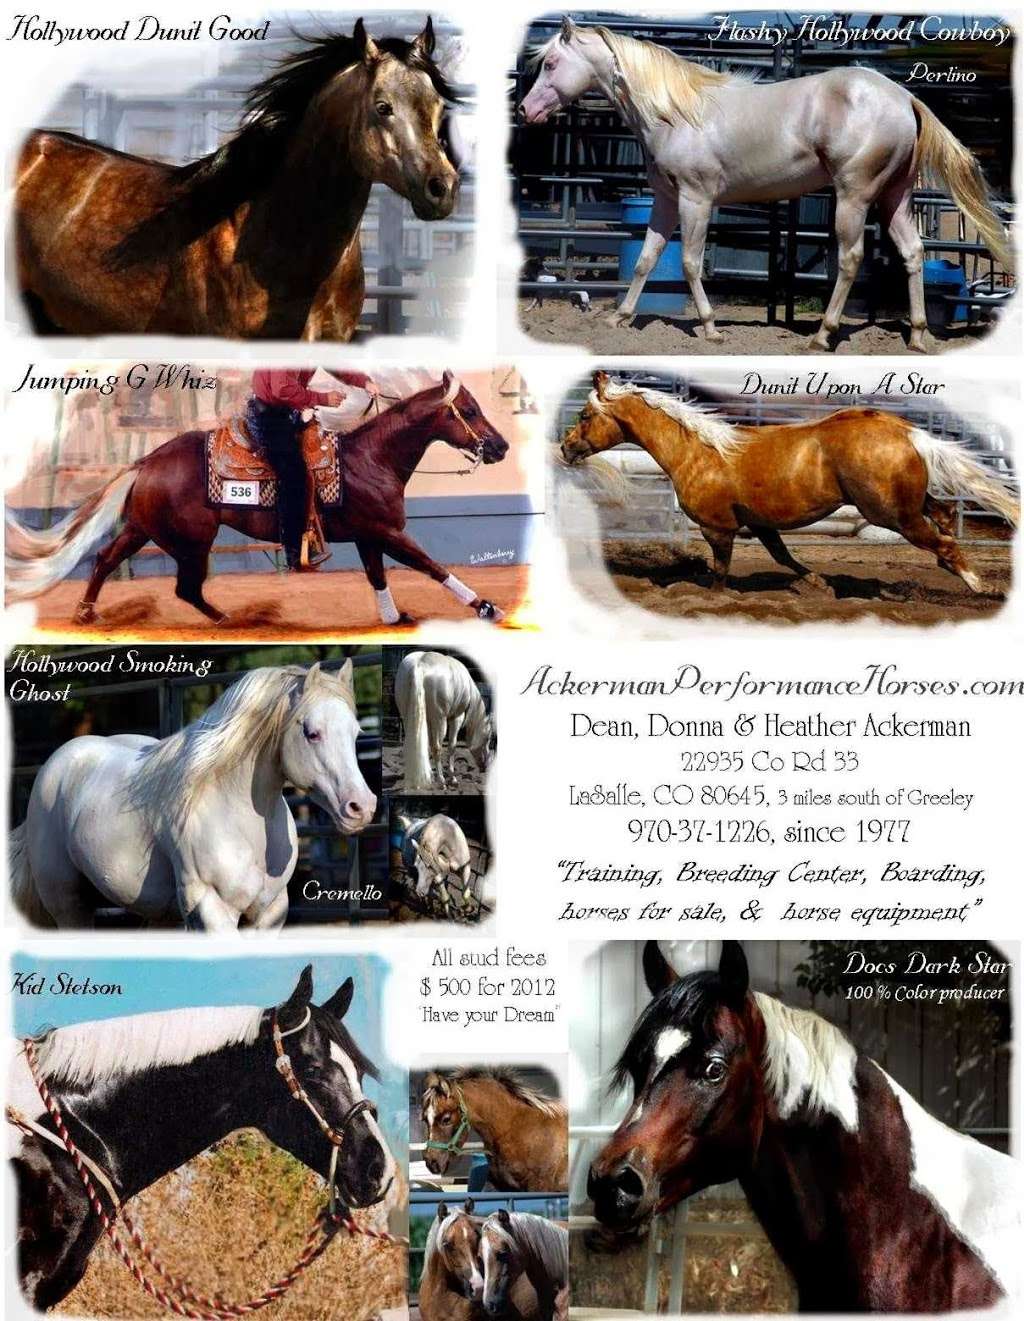 Ackerman Performance Horses | 22935 Co Rd 33, La Salle, CO 80645, USA | Phone: (970) 284-5599